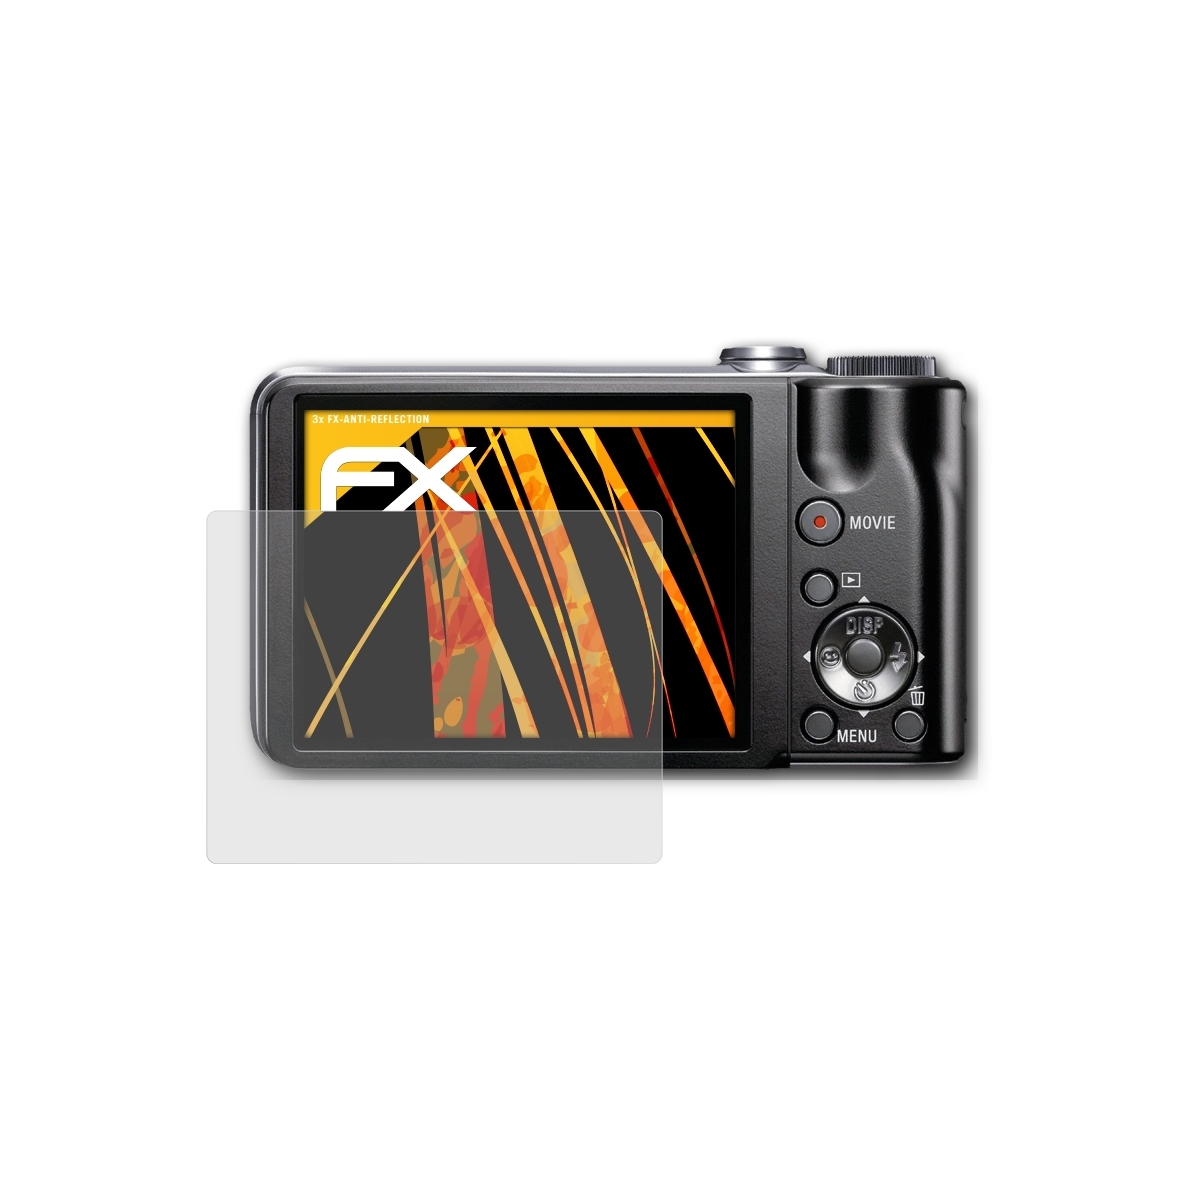 ATFOLIX 3x FX-Antireflex Sony Displayschutz(für DSC-HX5V)